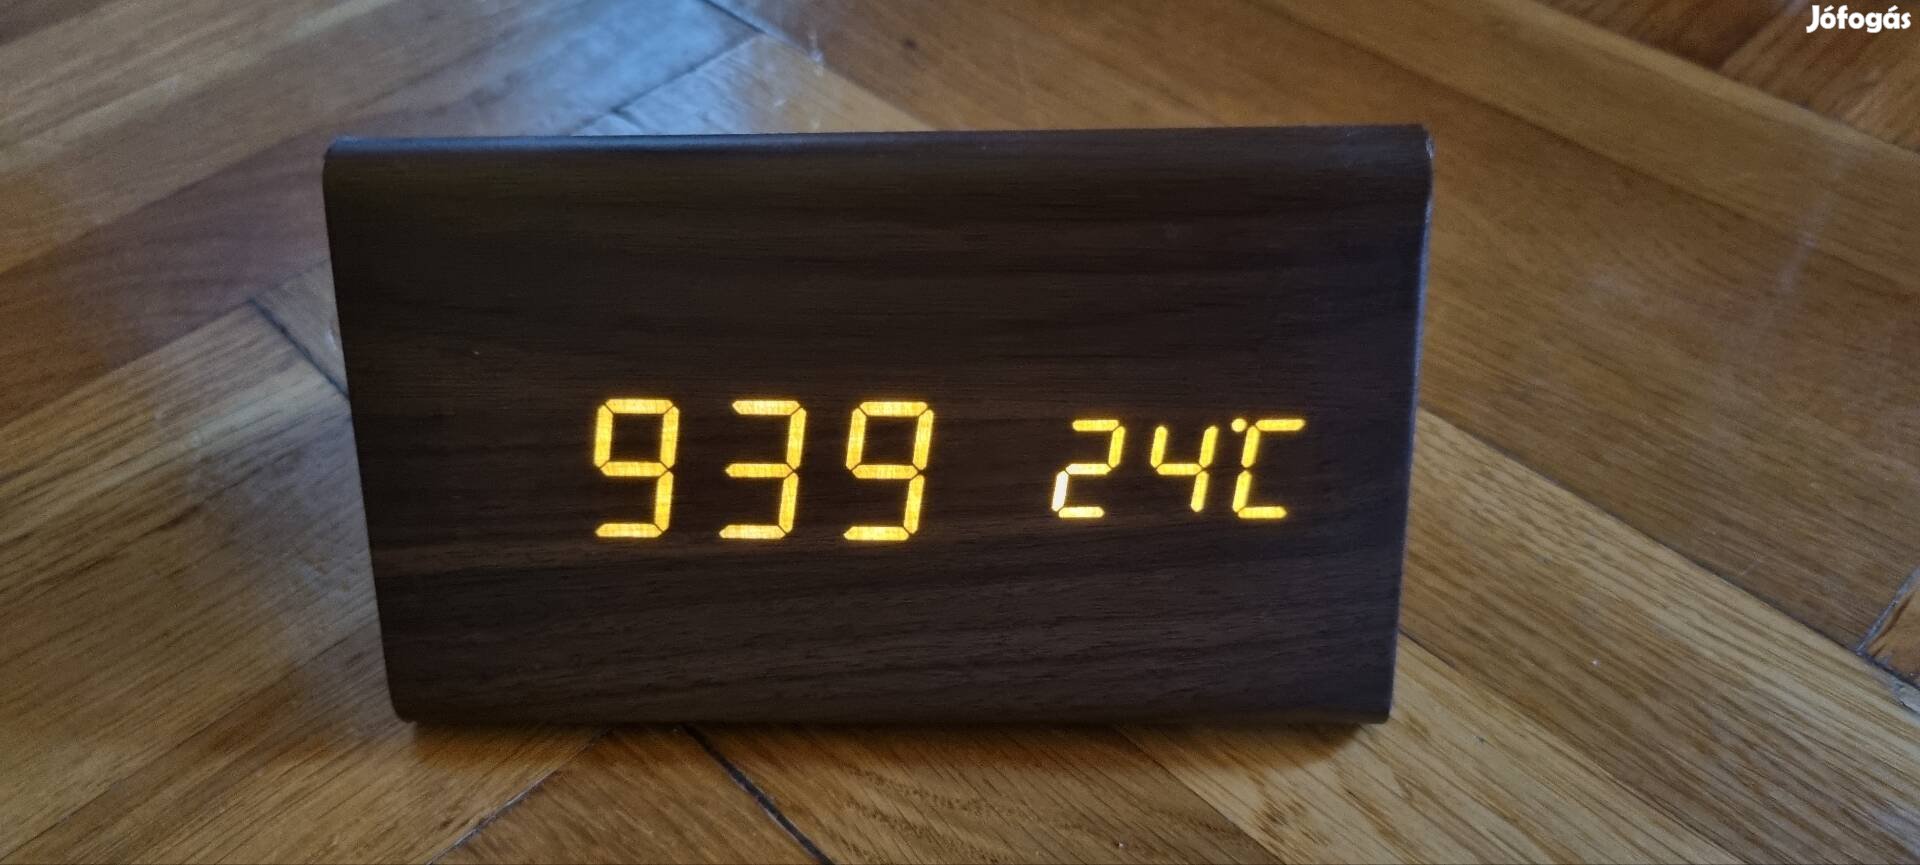 Asztali óra, dátum, ébresztő és hőmérséklet kijelzővel